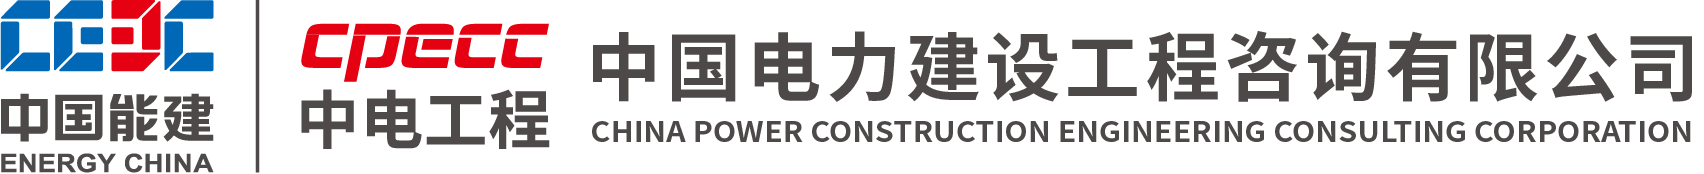 中国电力建设工程咨询有限公司.png